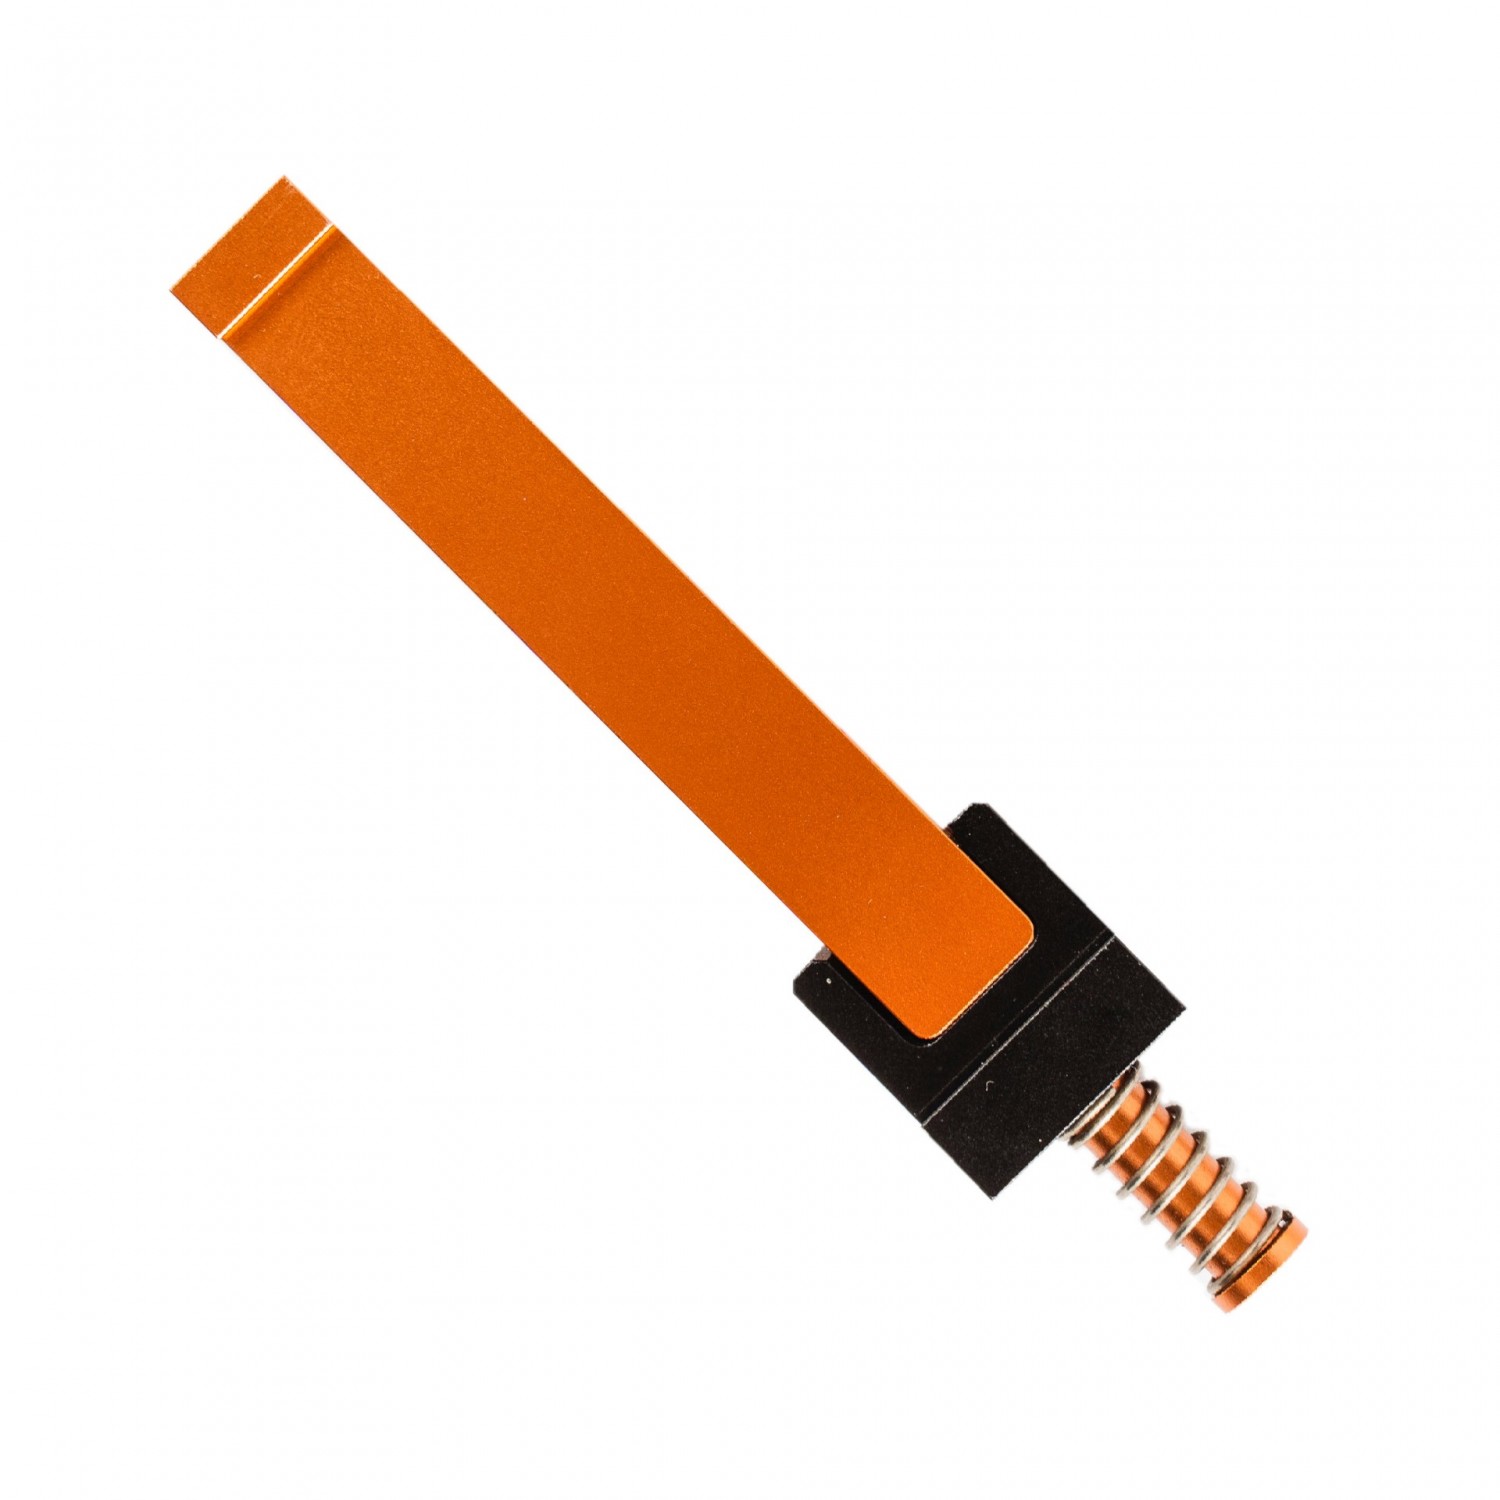 Work Sharp Upgrade Kit for the Precision Adjust Knife Sharpener For Sale